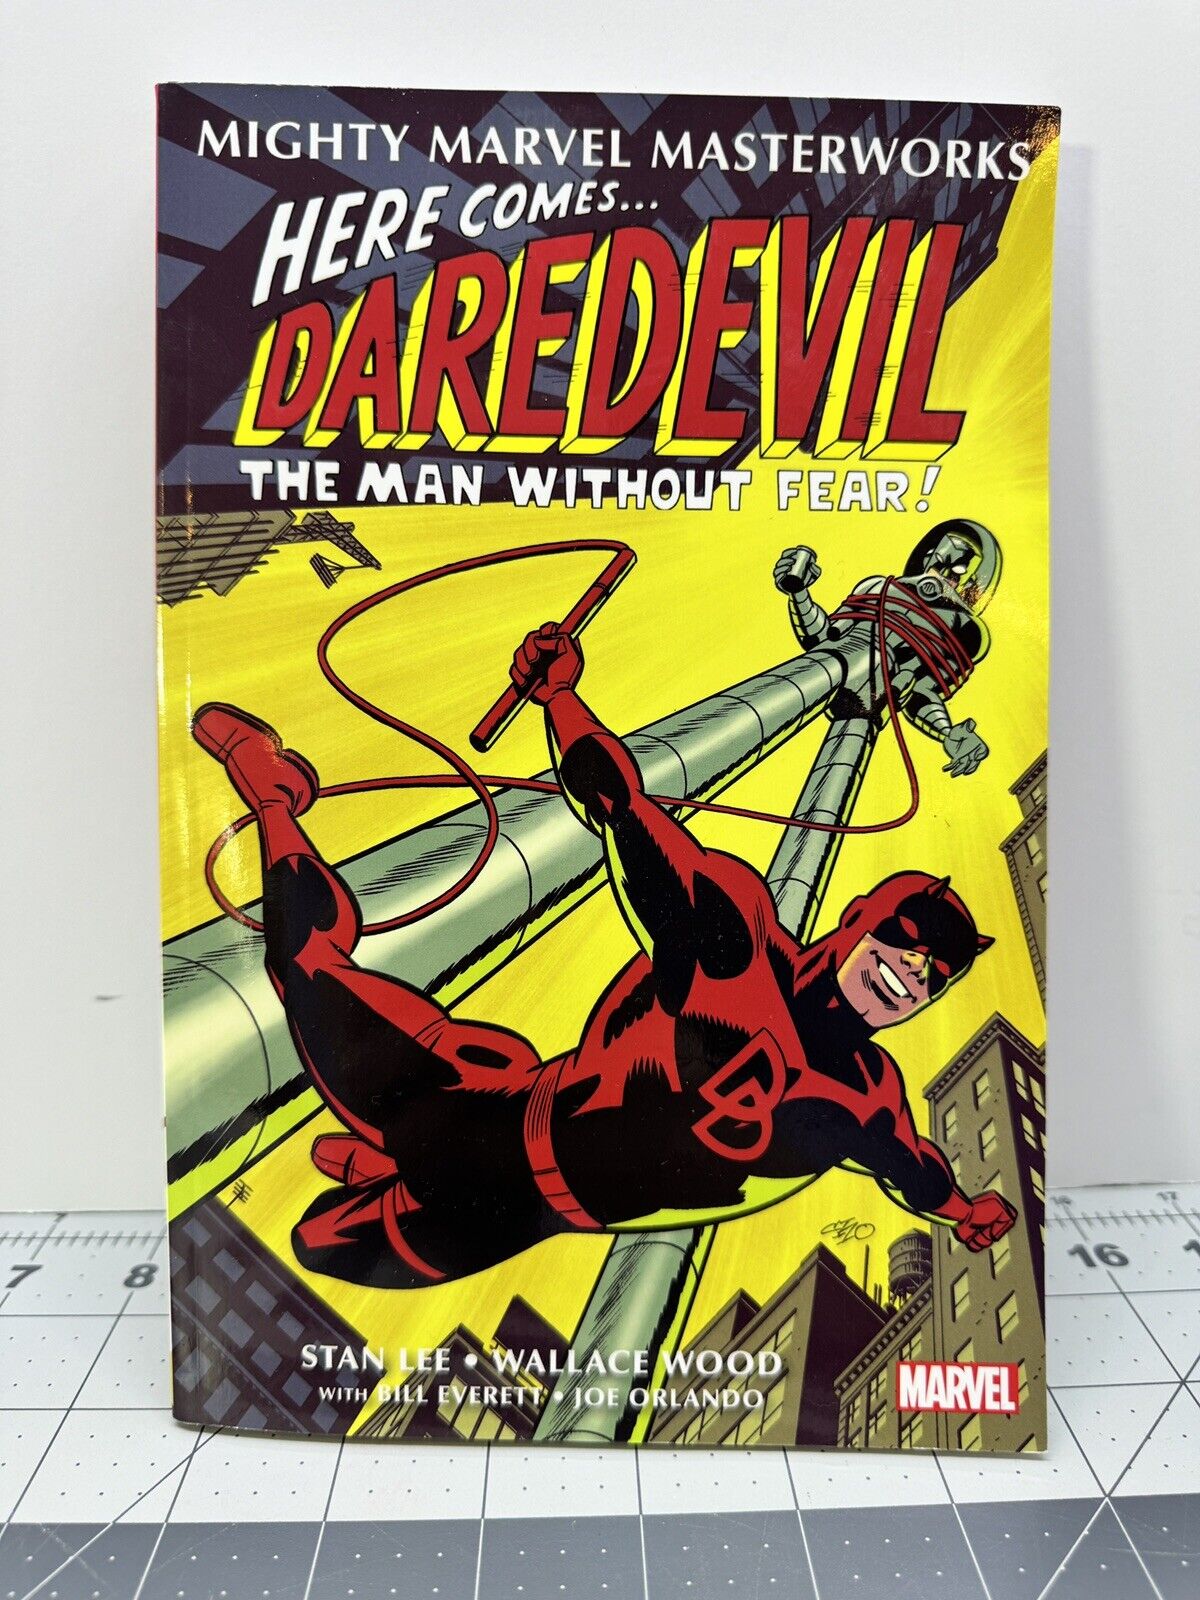 Mighty Marvel Masterworks Daredevil Vol. 1 Graphic Novel Comic